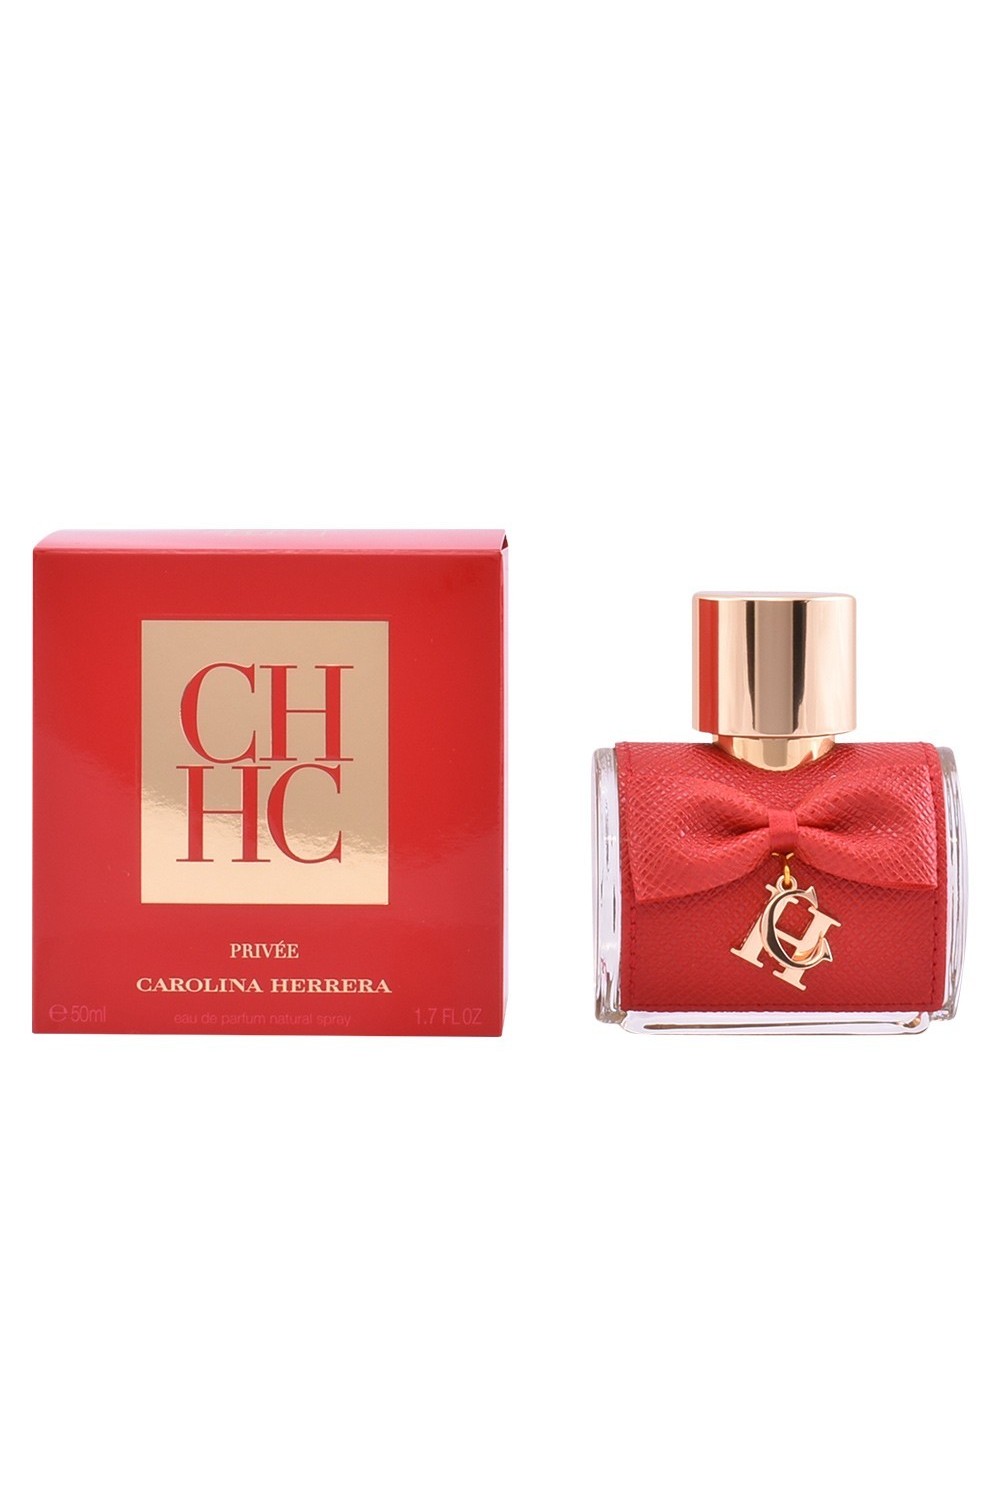 Carolina Herrera Ch Privée Eau De Perfume Spray 50ml